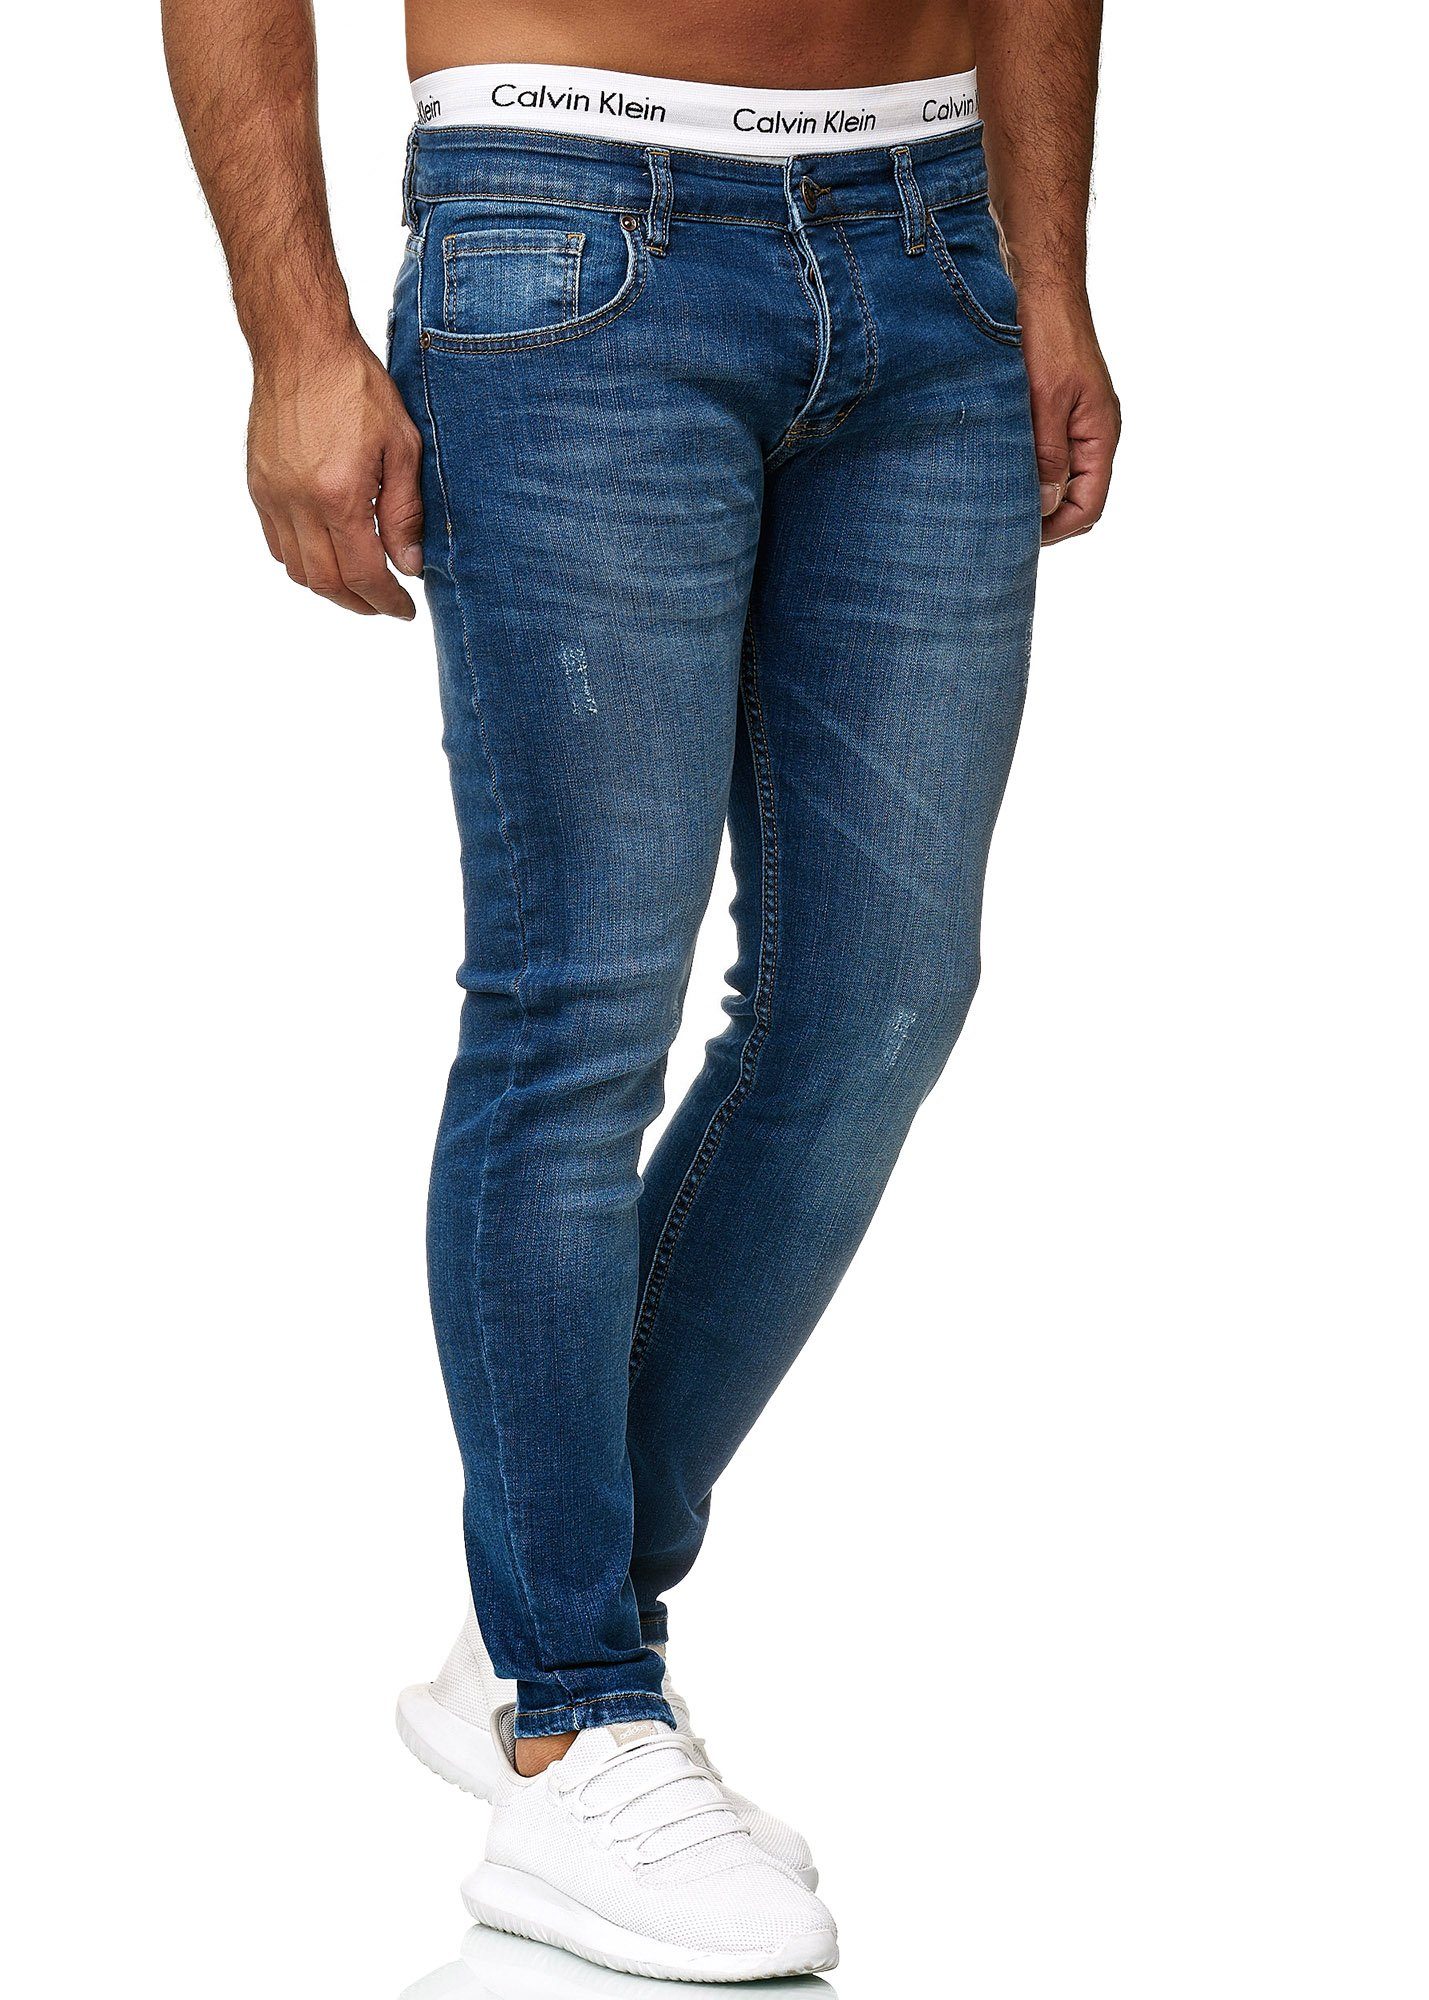 Code47 Skinny-fit-Jeans Code47 Designer Herren Jeans Hose Regular Skinny Fit Jeanshose Basic 614 Light Blue Used